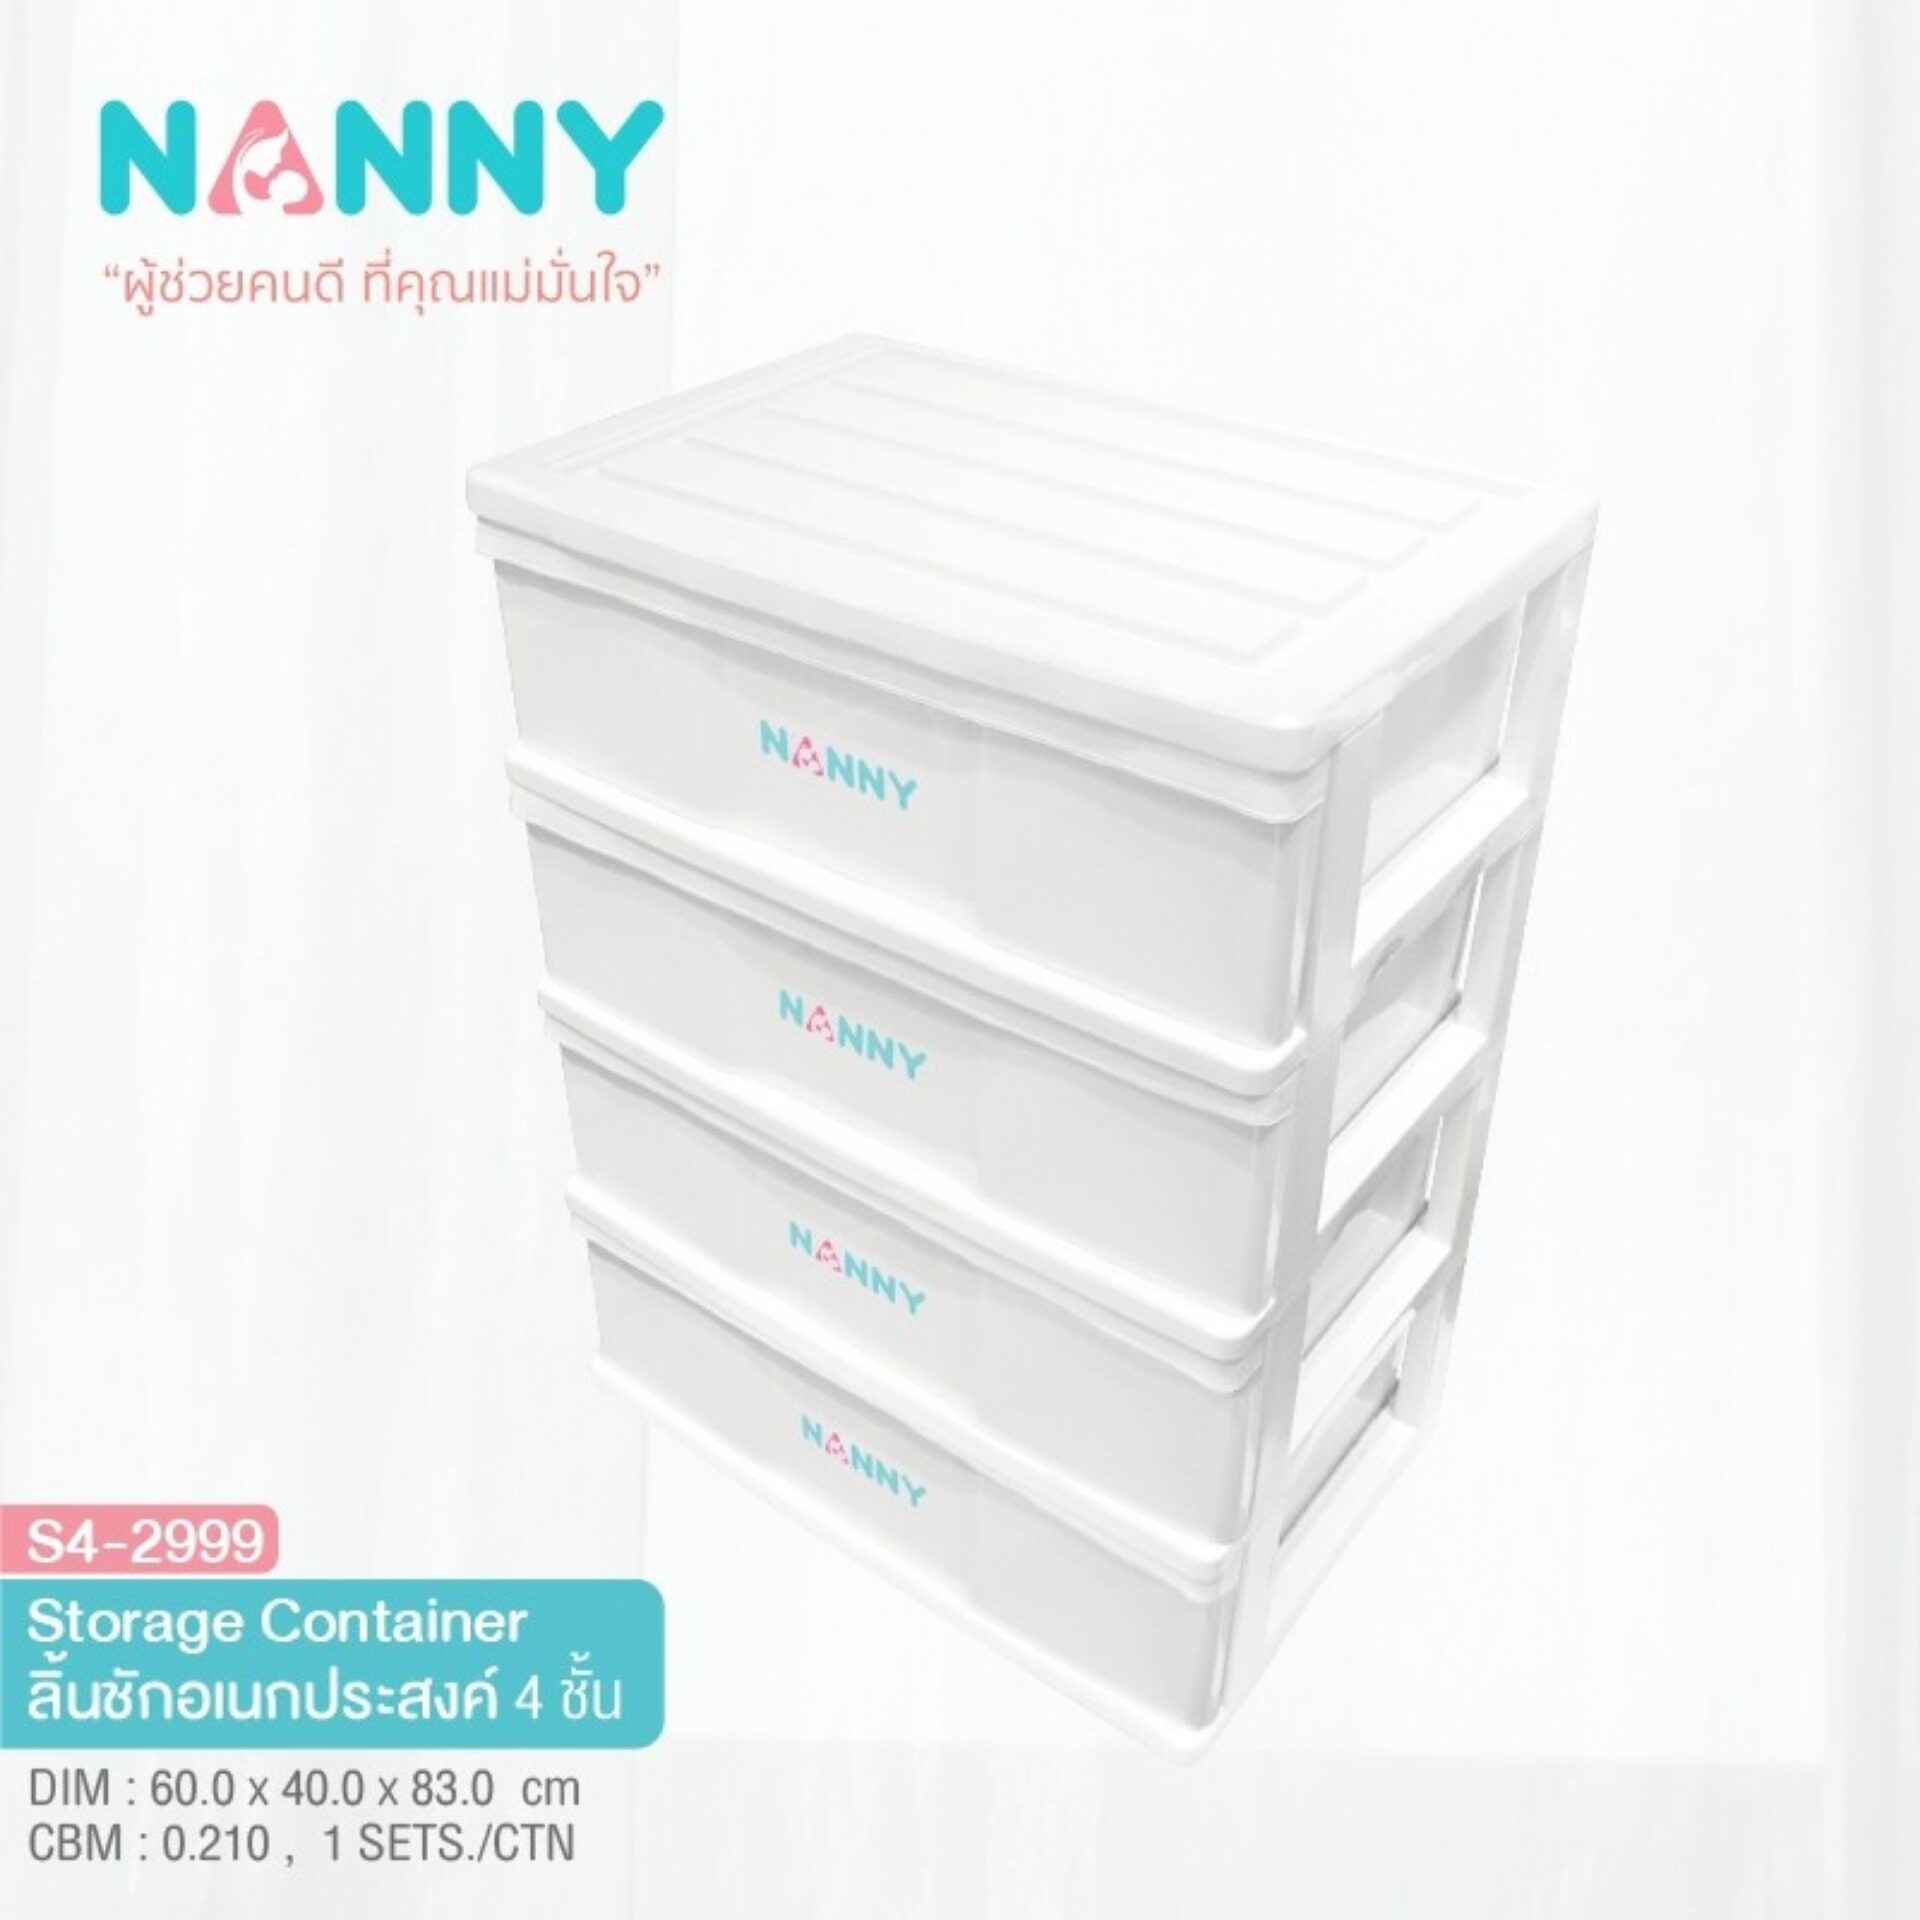 NANNY ลิ้นชักอเนกประสงค์ 4 ชั้น Storage Container รุ่น S4-2999